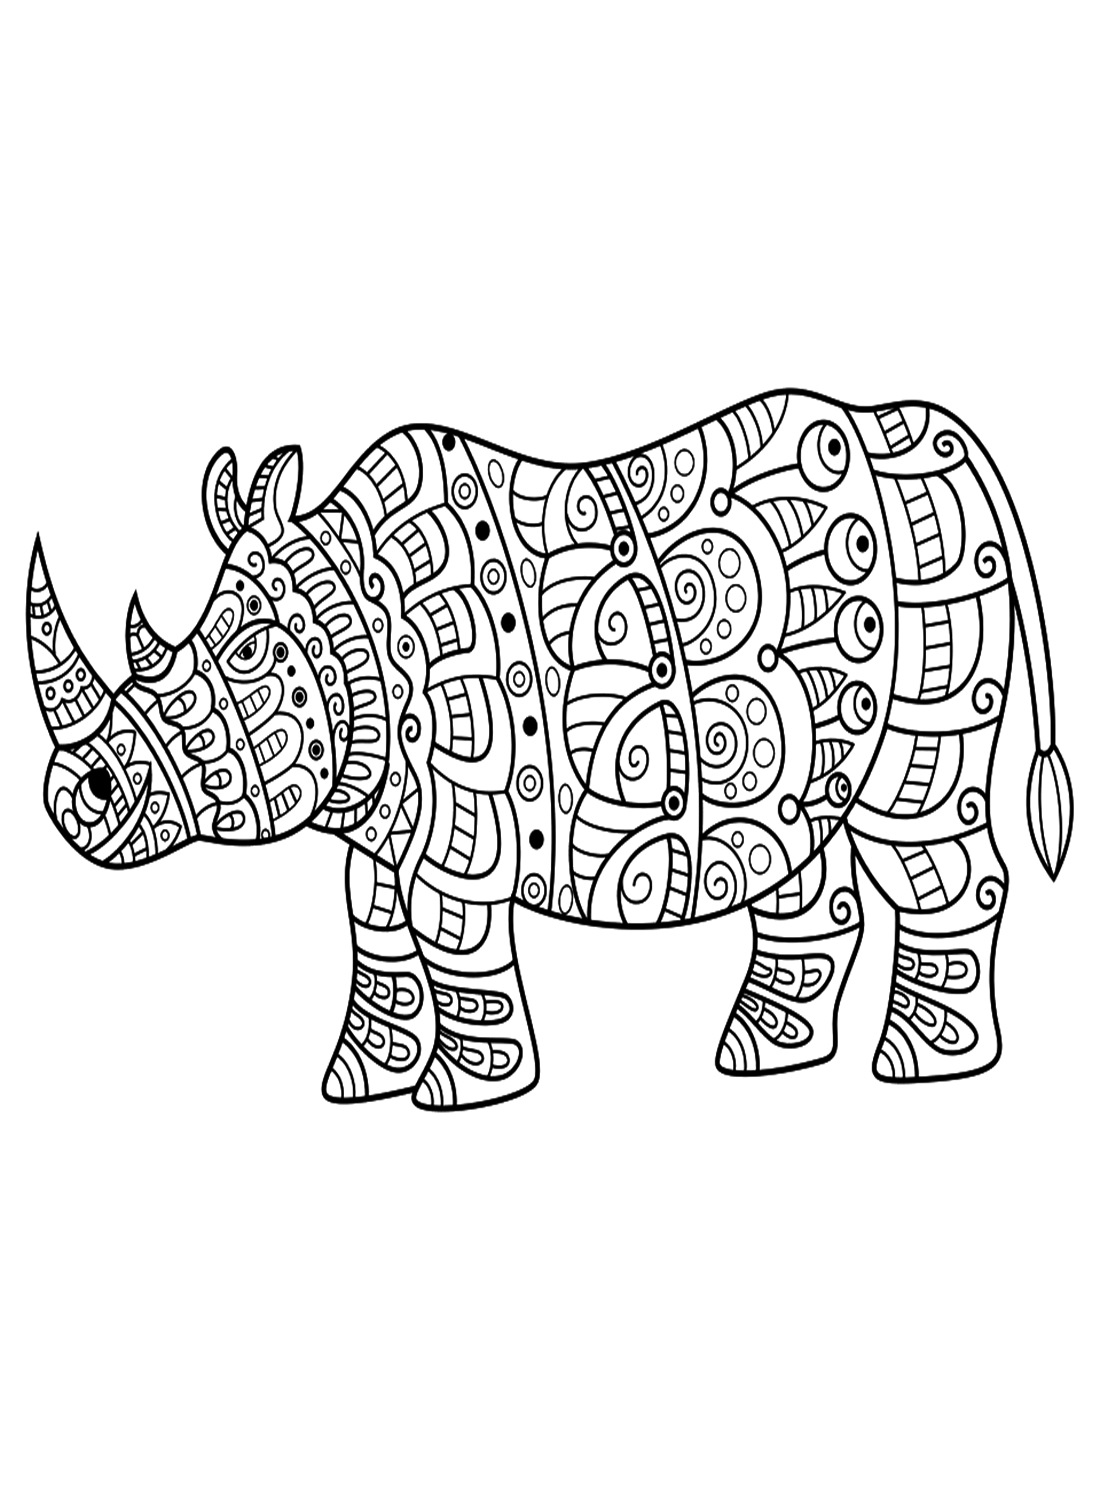 وحيد القرن بأسلوب Zentangle من وحيد القرن